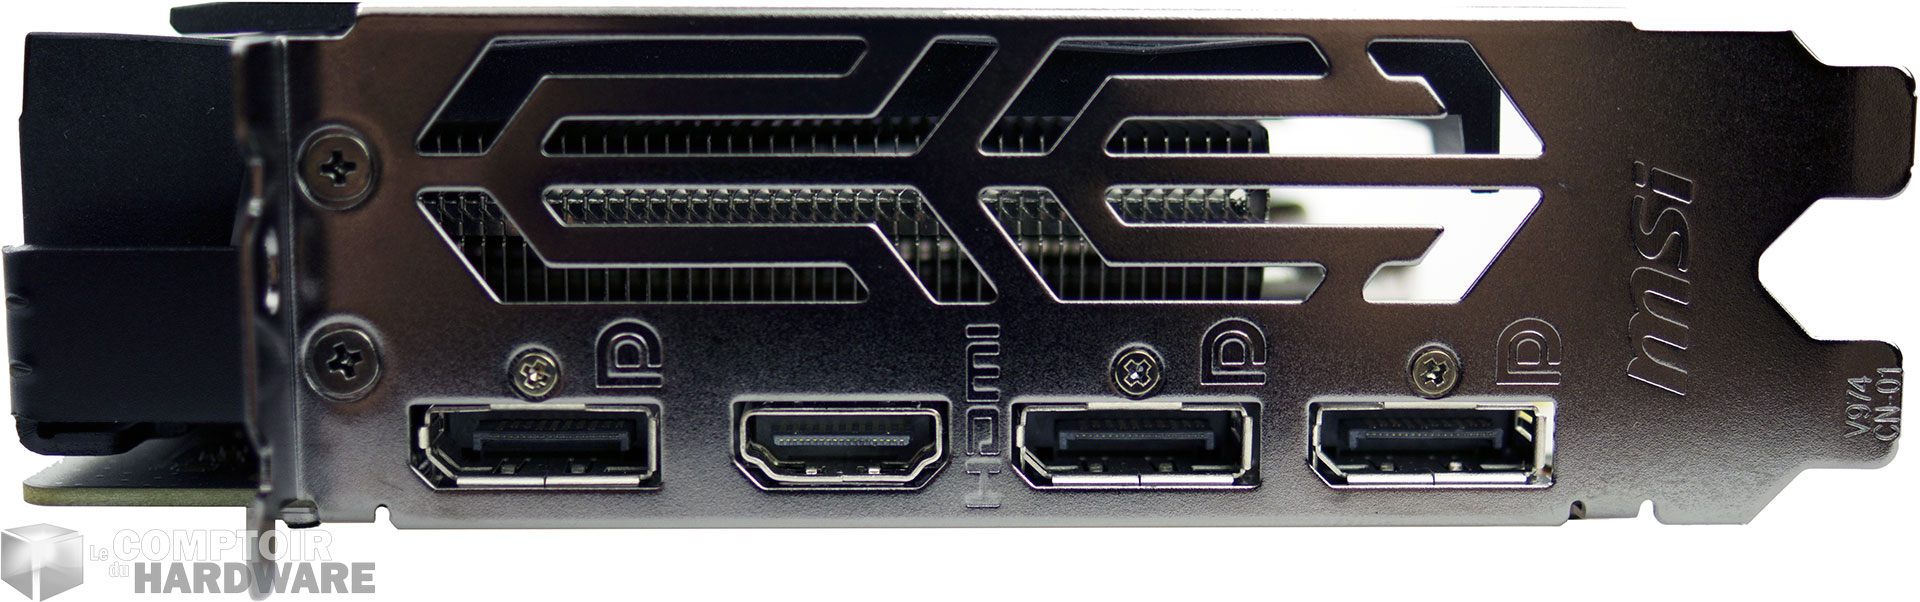 MSI GTX 1650 SUPER : connecteurs vidéo